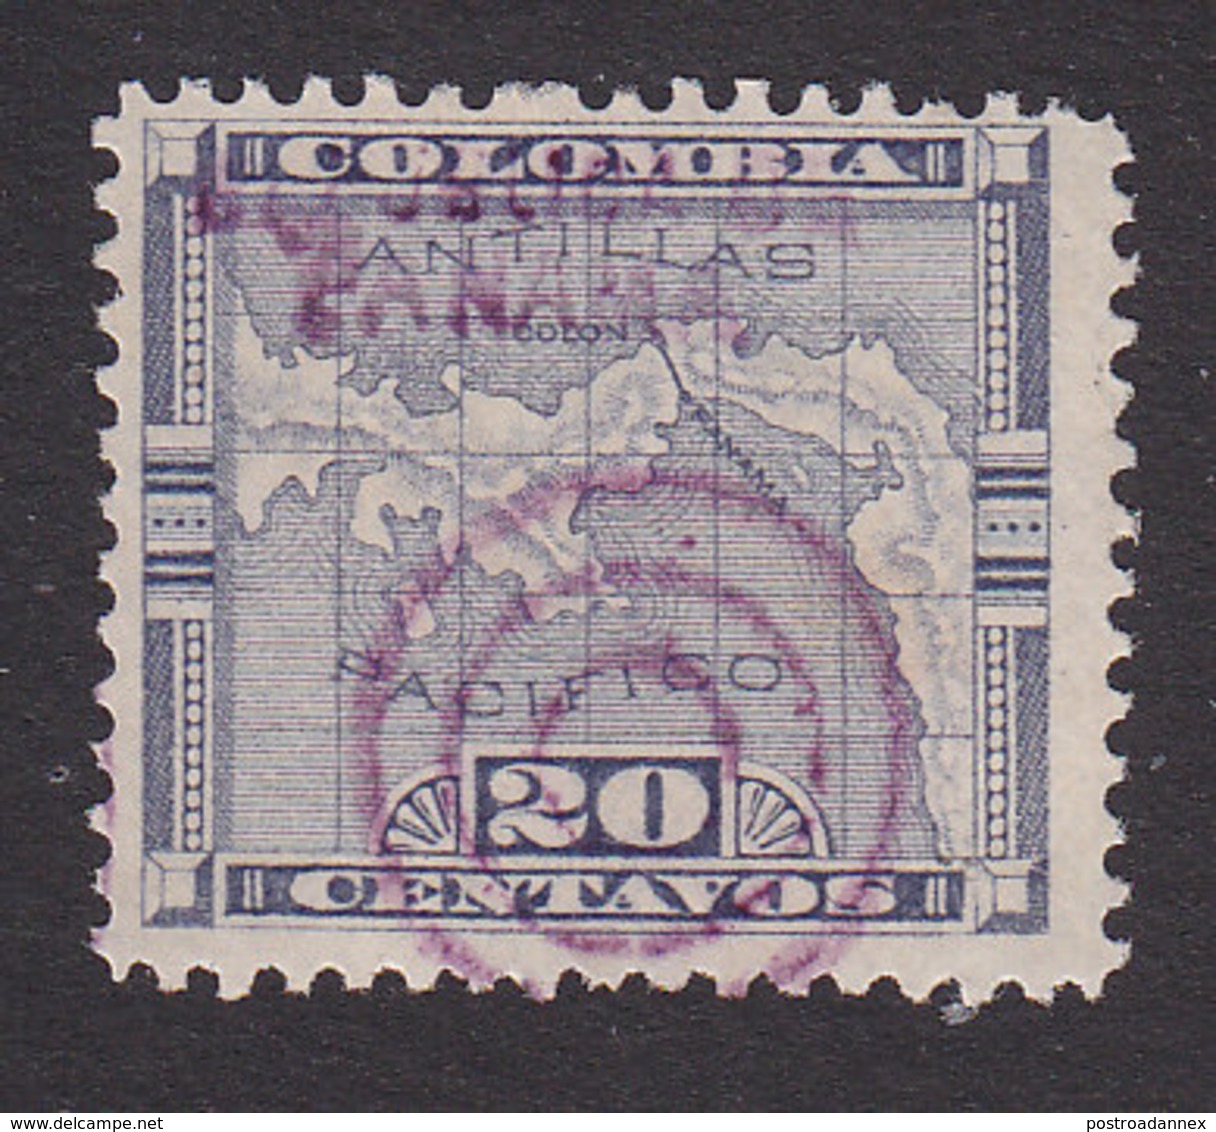 Panama, Scott #105, Used, Map Overprinted, Issued 1903 - Panama